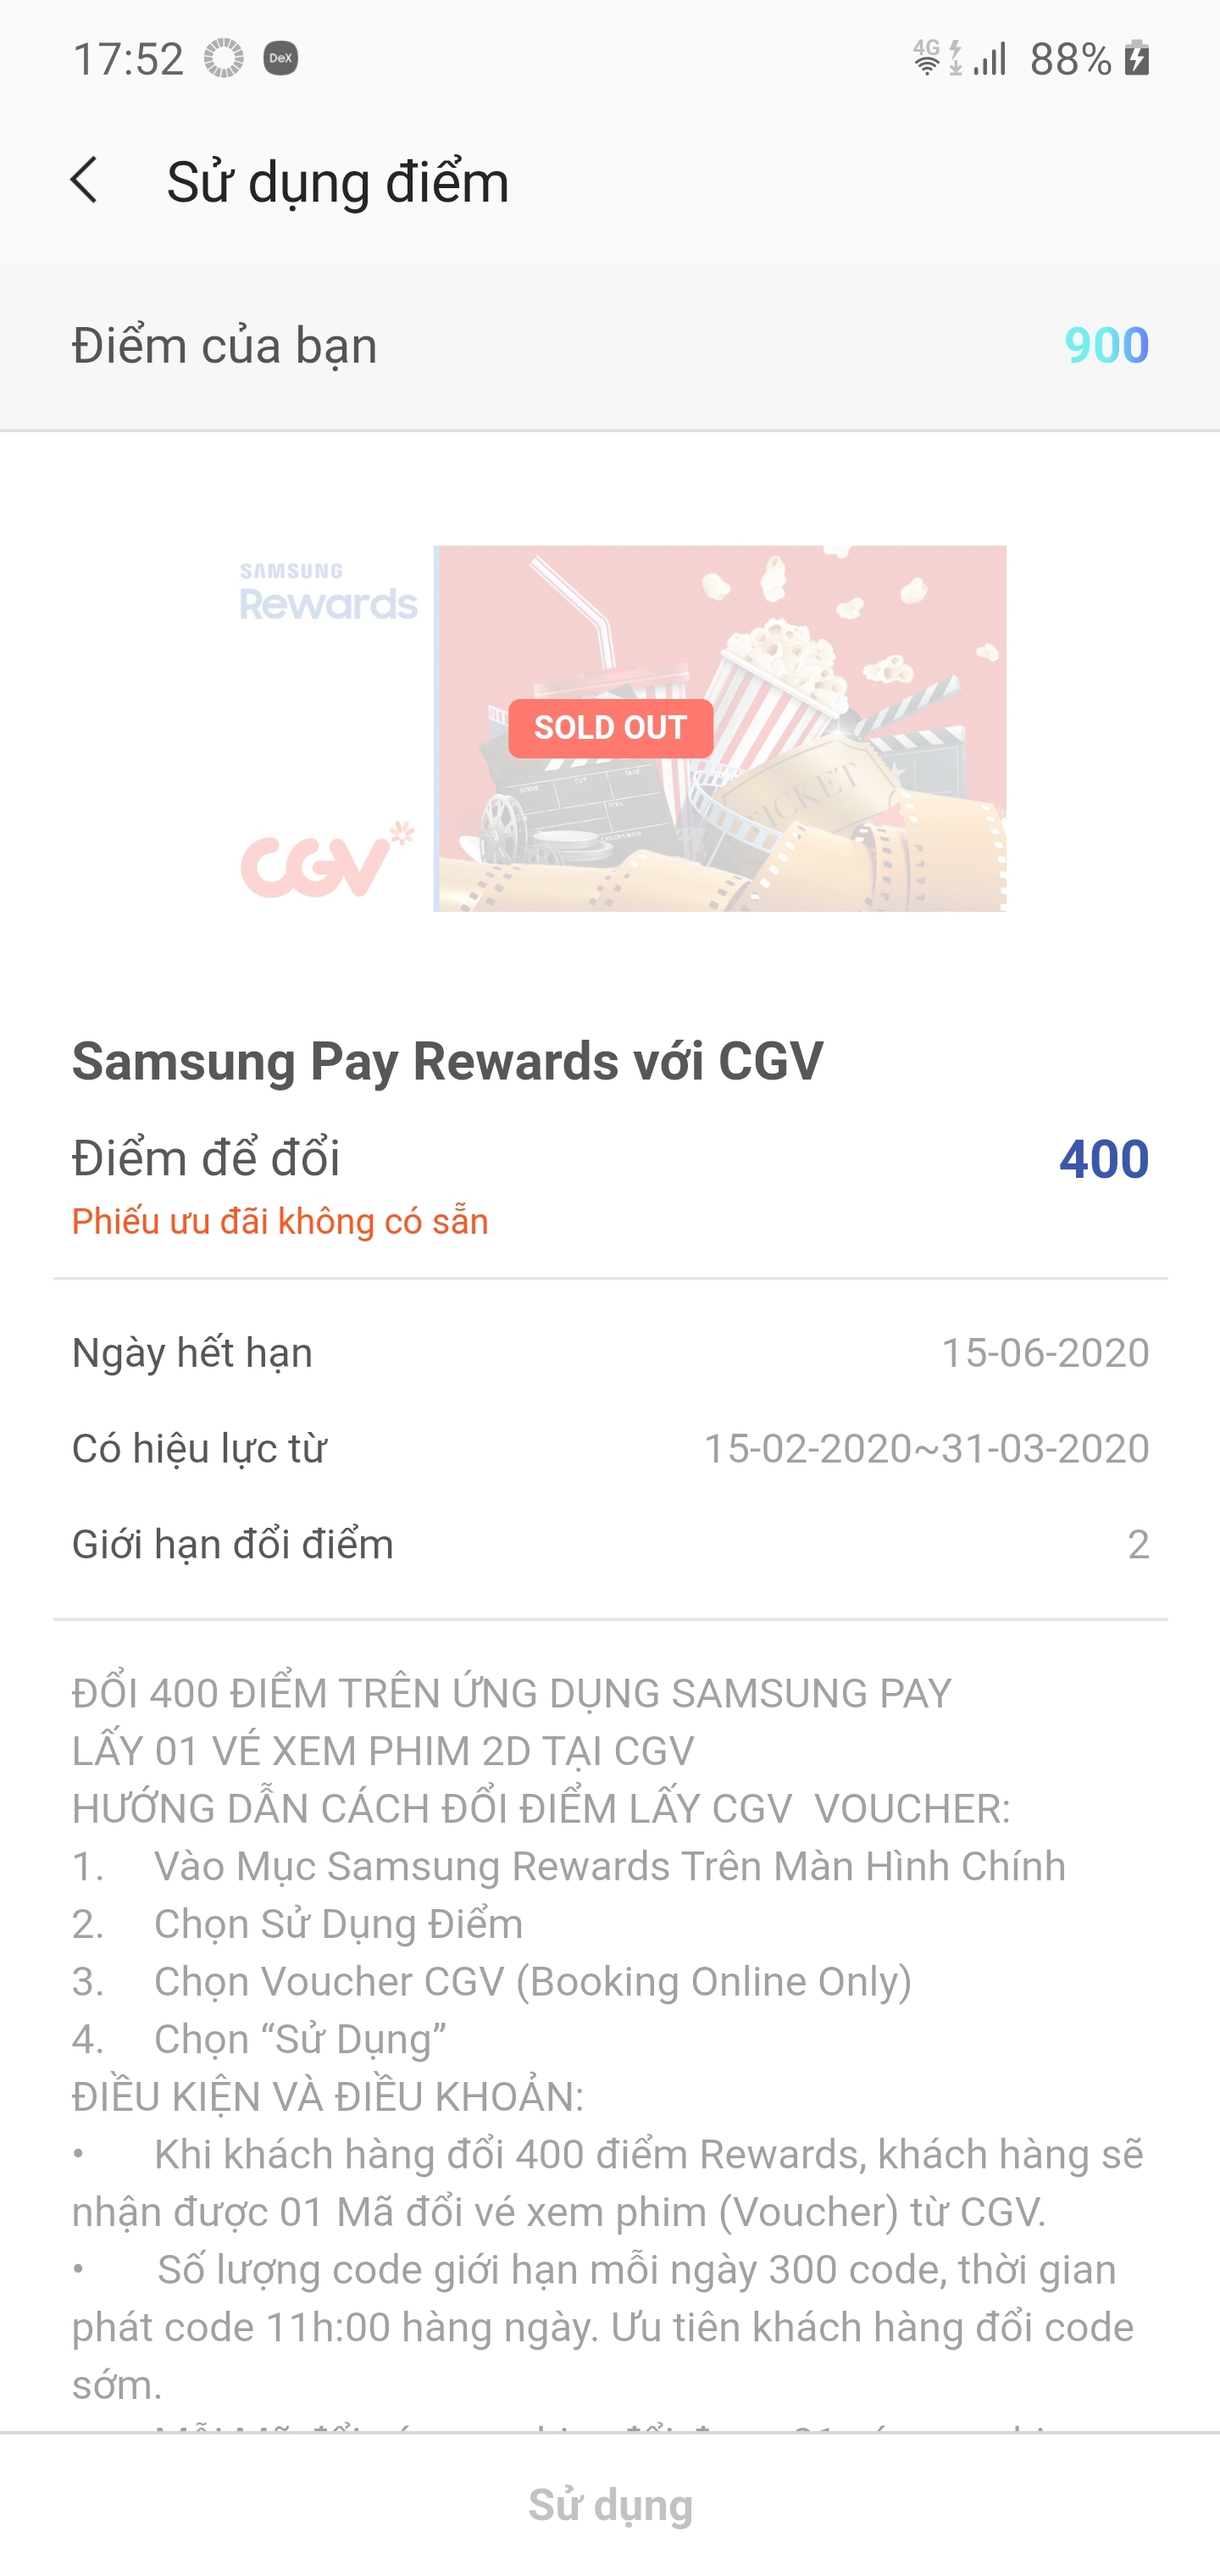 Bạn nào sử dụng Samsung Pay nhớ lúc 11 giờ trưa canh lấy voucher xem phim CGV nhé !